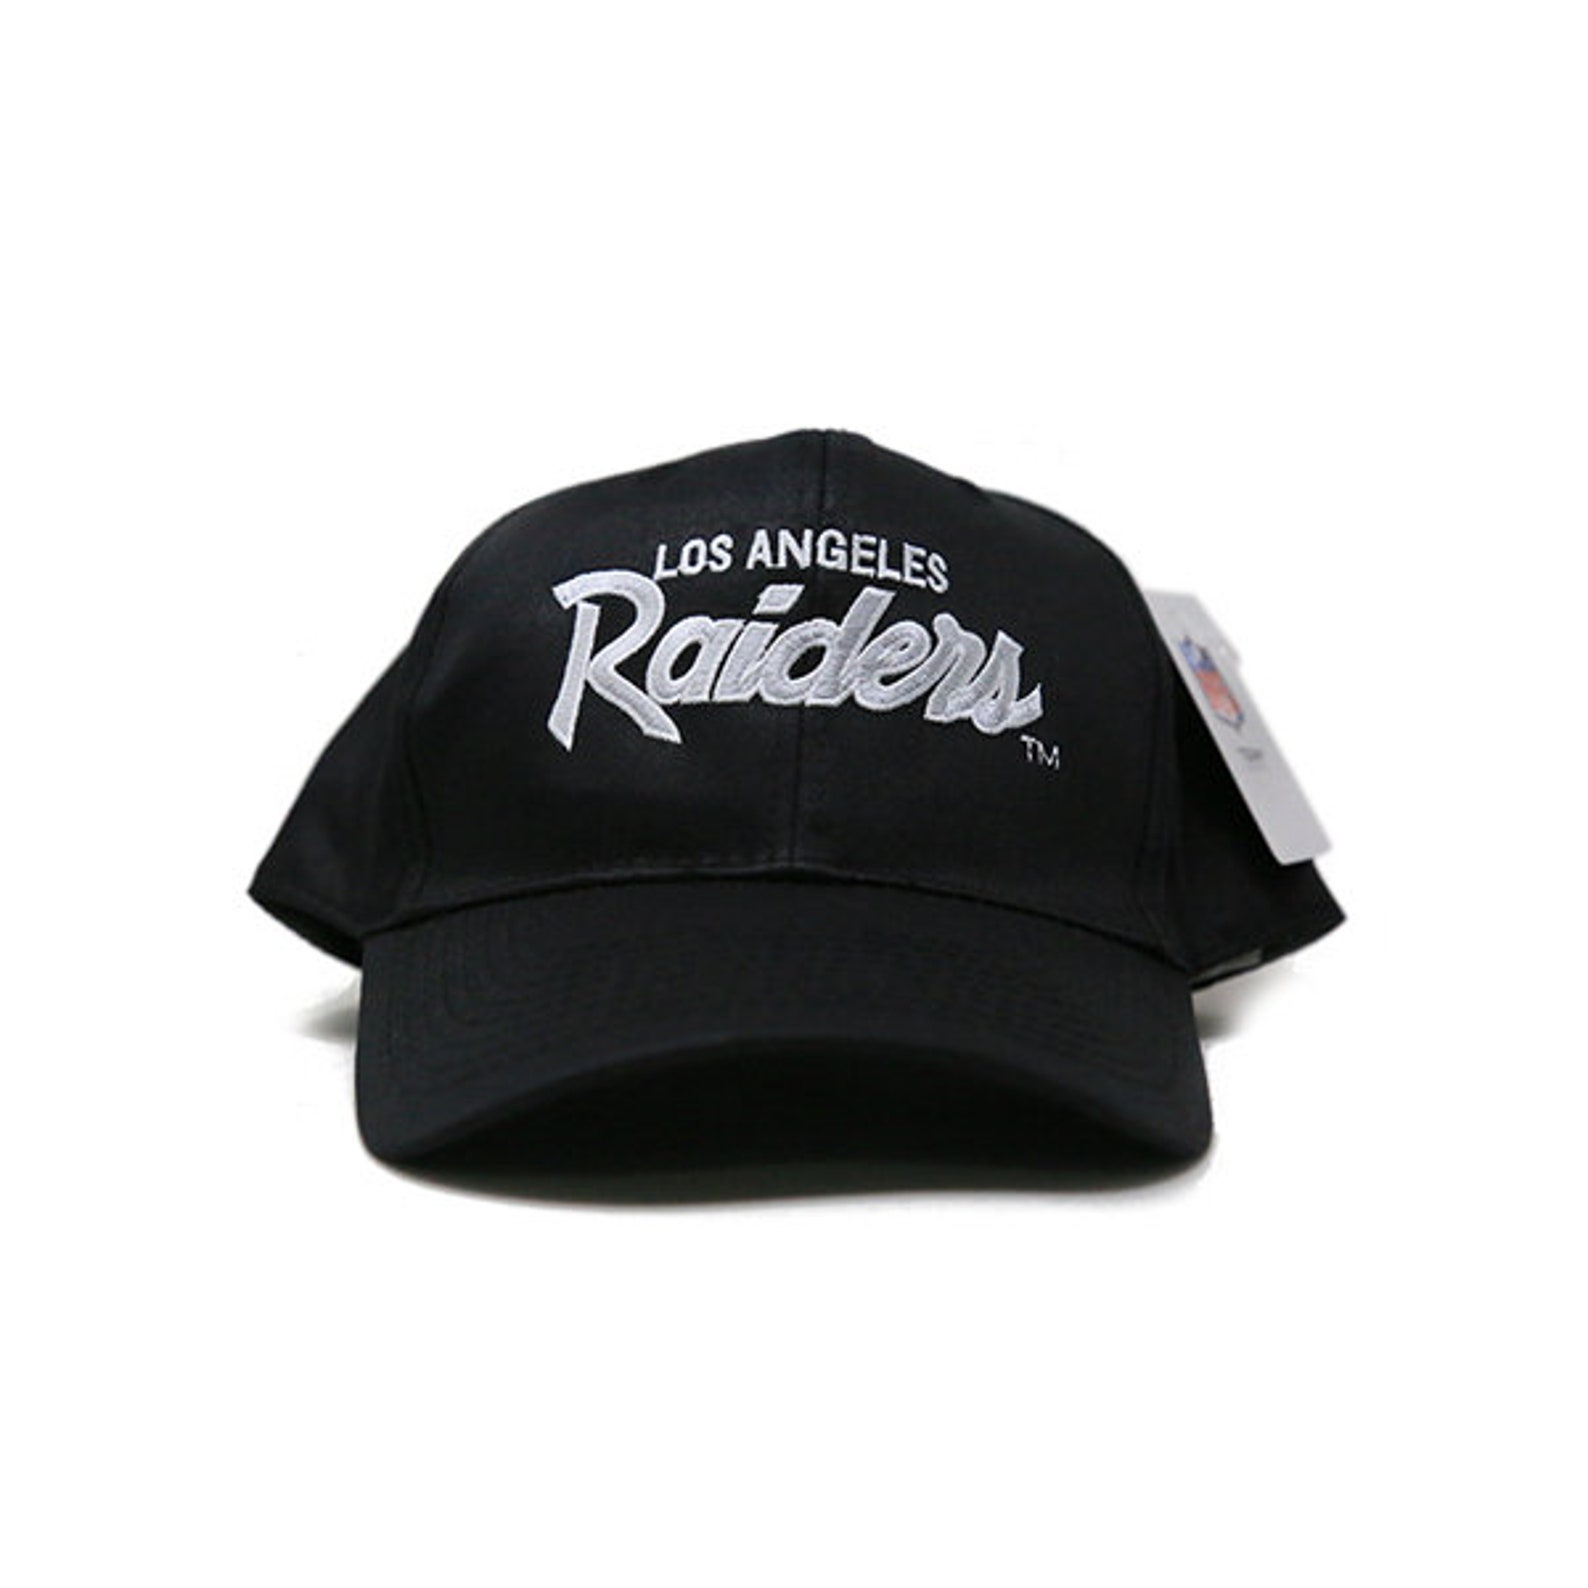 Los Angeles Raiders Snapback Hat | Etsy